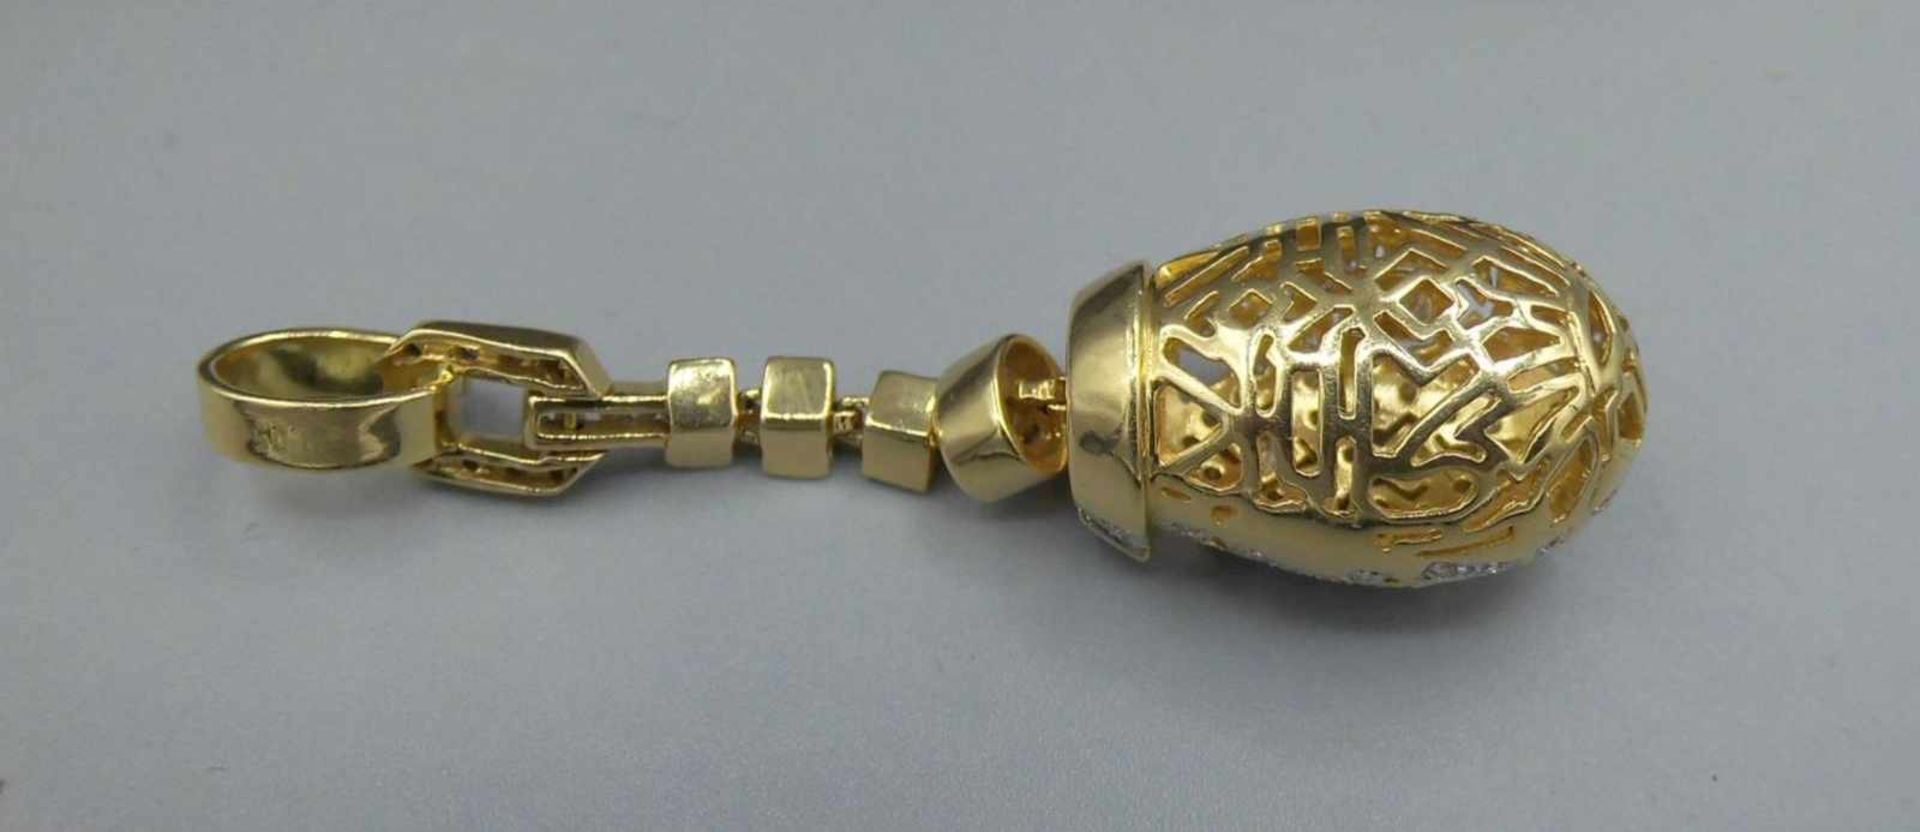 EXKLUSIVER ANHÄNGER MIT BRILLANTBESATZ / pendant, in 750er Gelbgoldfassung (12 g), komplett - Image 3 of 4